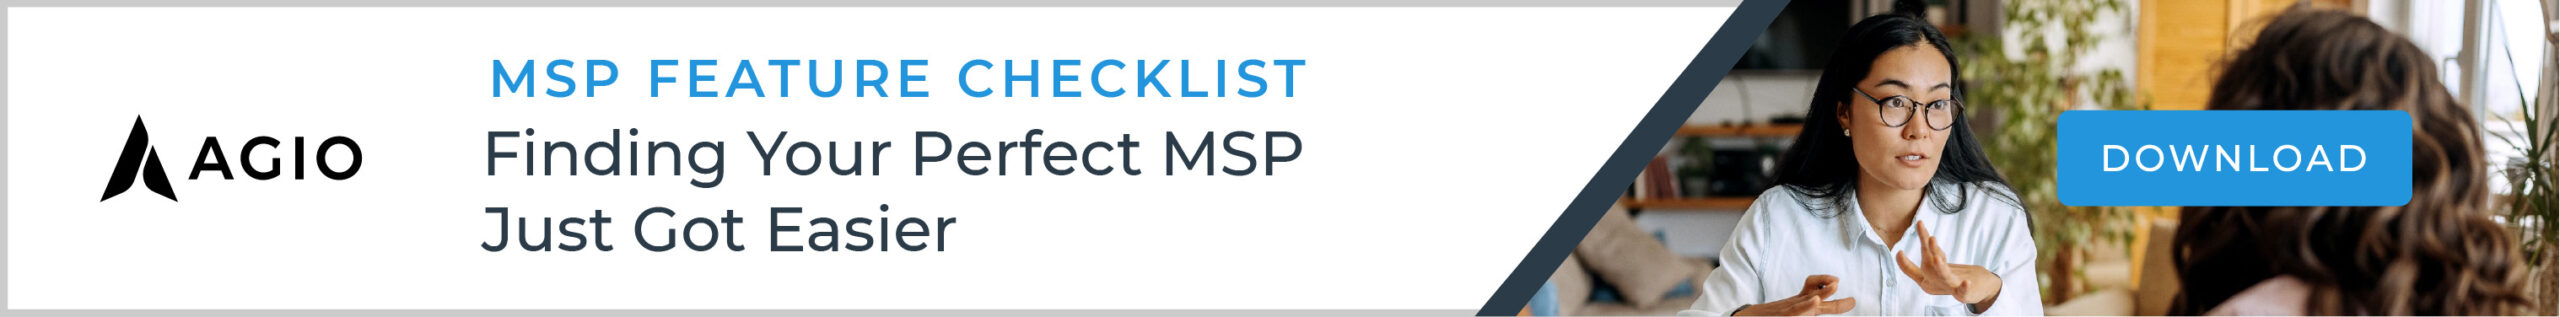 MSP Feature Checklist